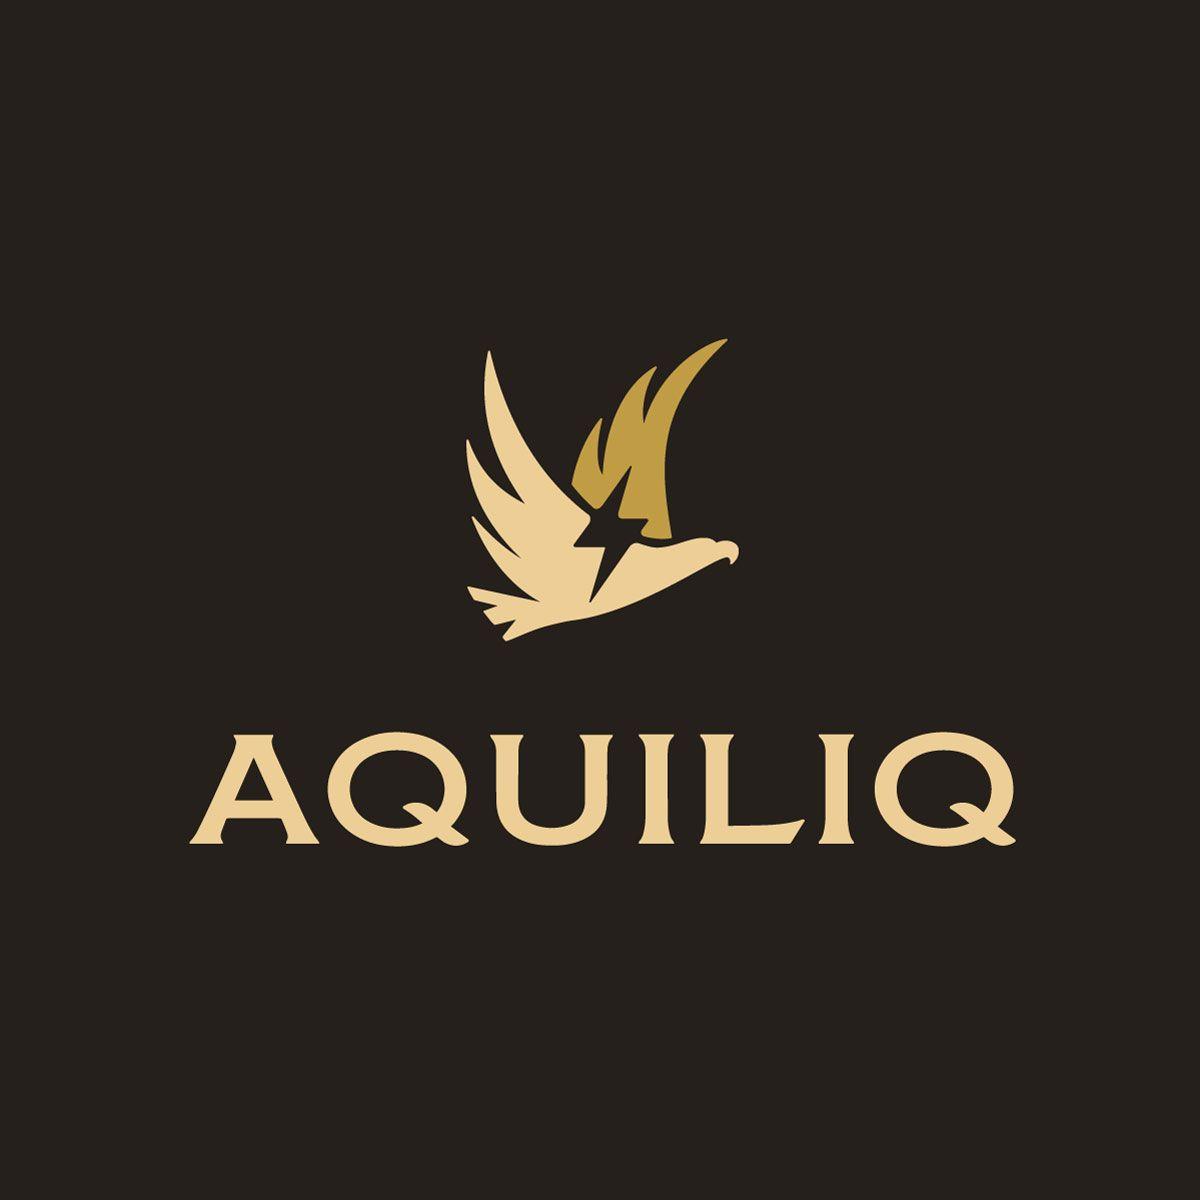 Fashion Clothing Brand Logo - Aquiliq Apparel Brand Logo Design - SpellBrand®